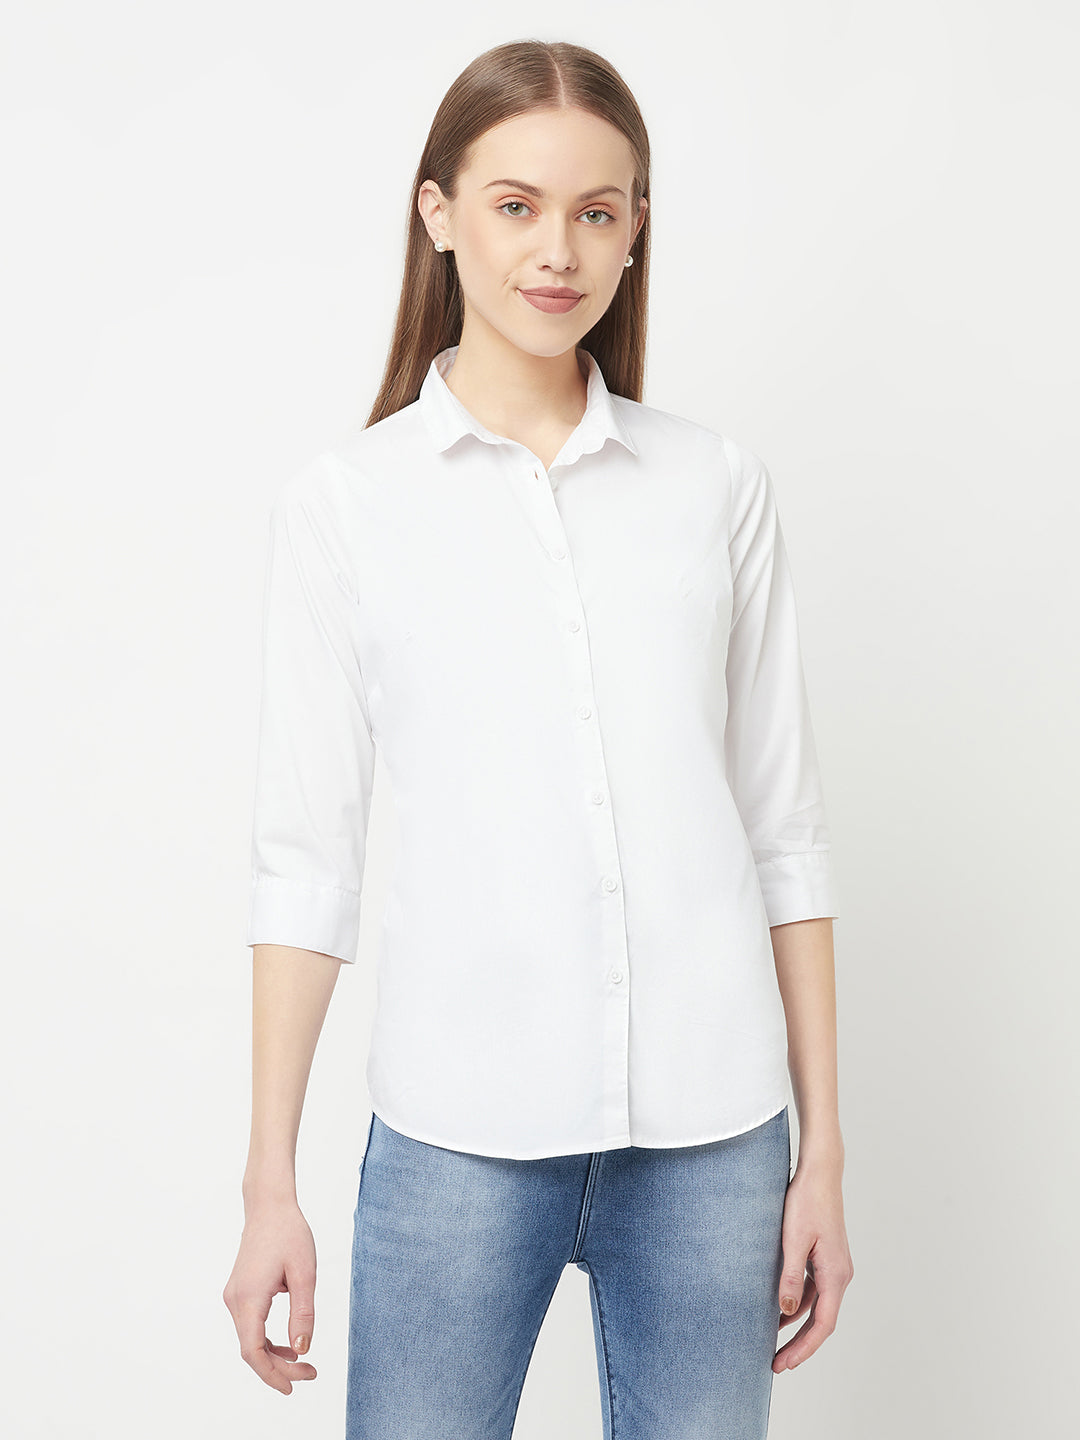 White Casual Shirt - Women Tops